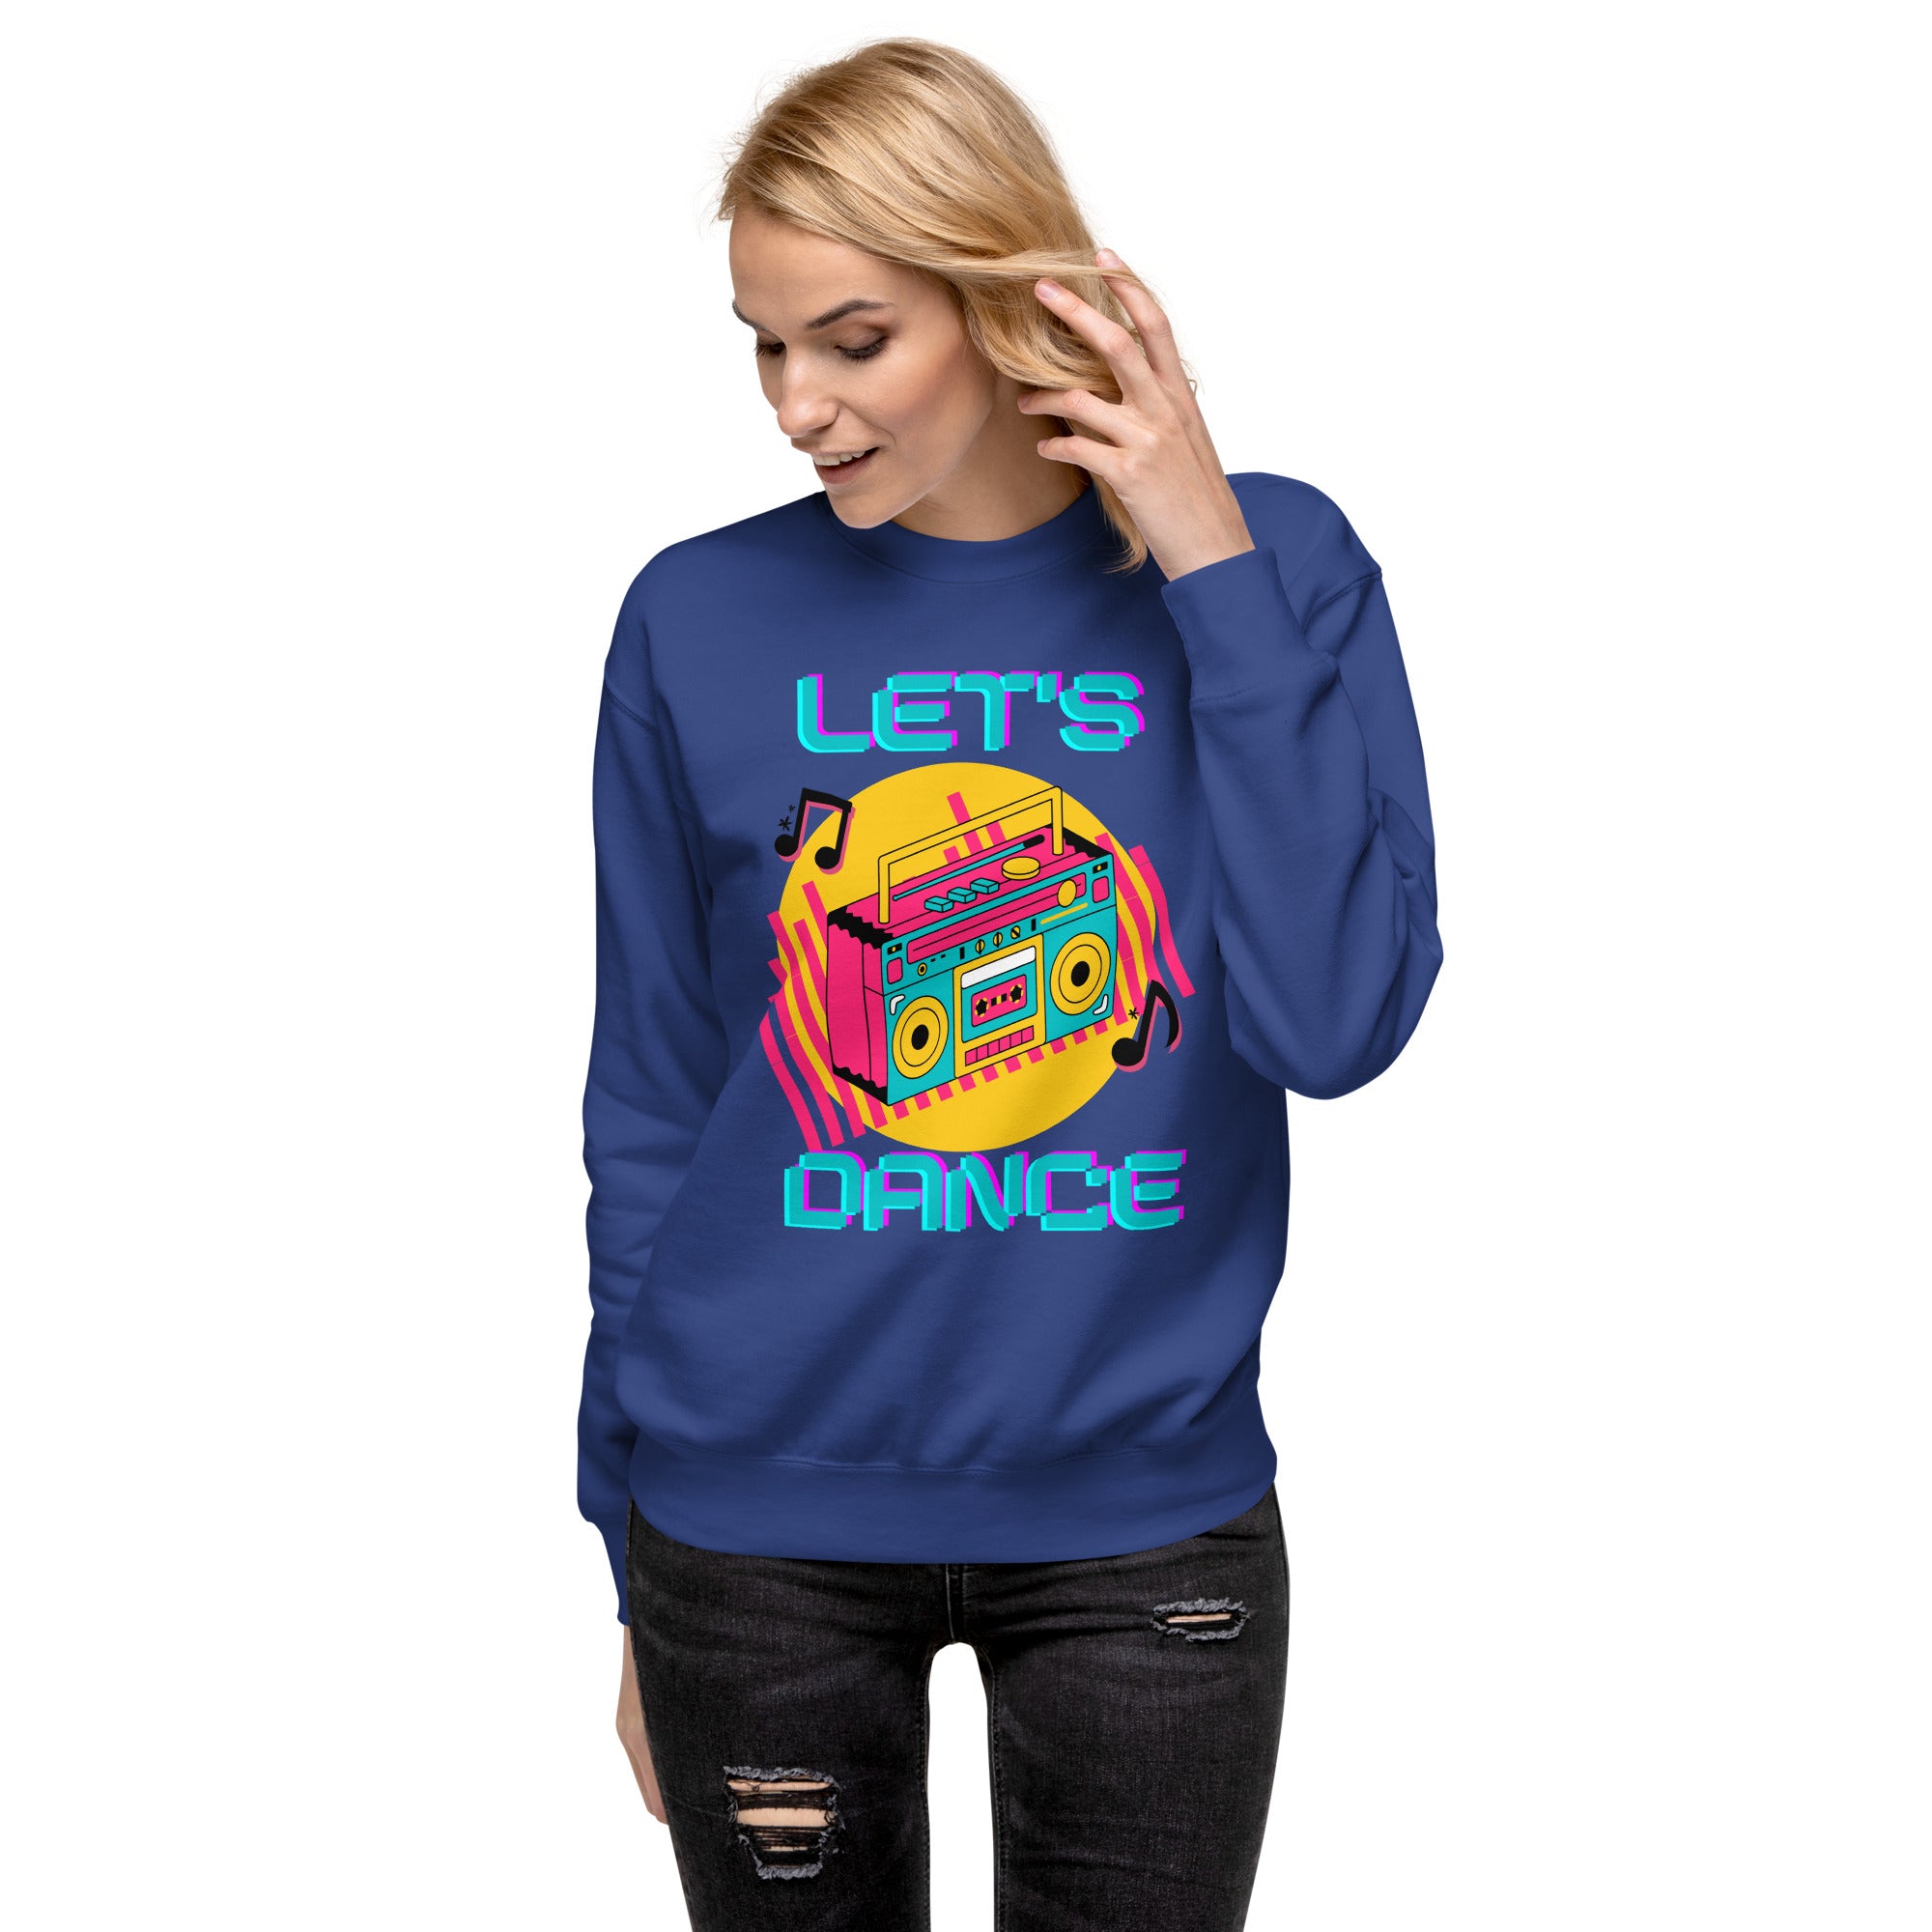 Let's Dance Women's Premium Sweatshirt